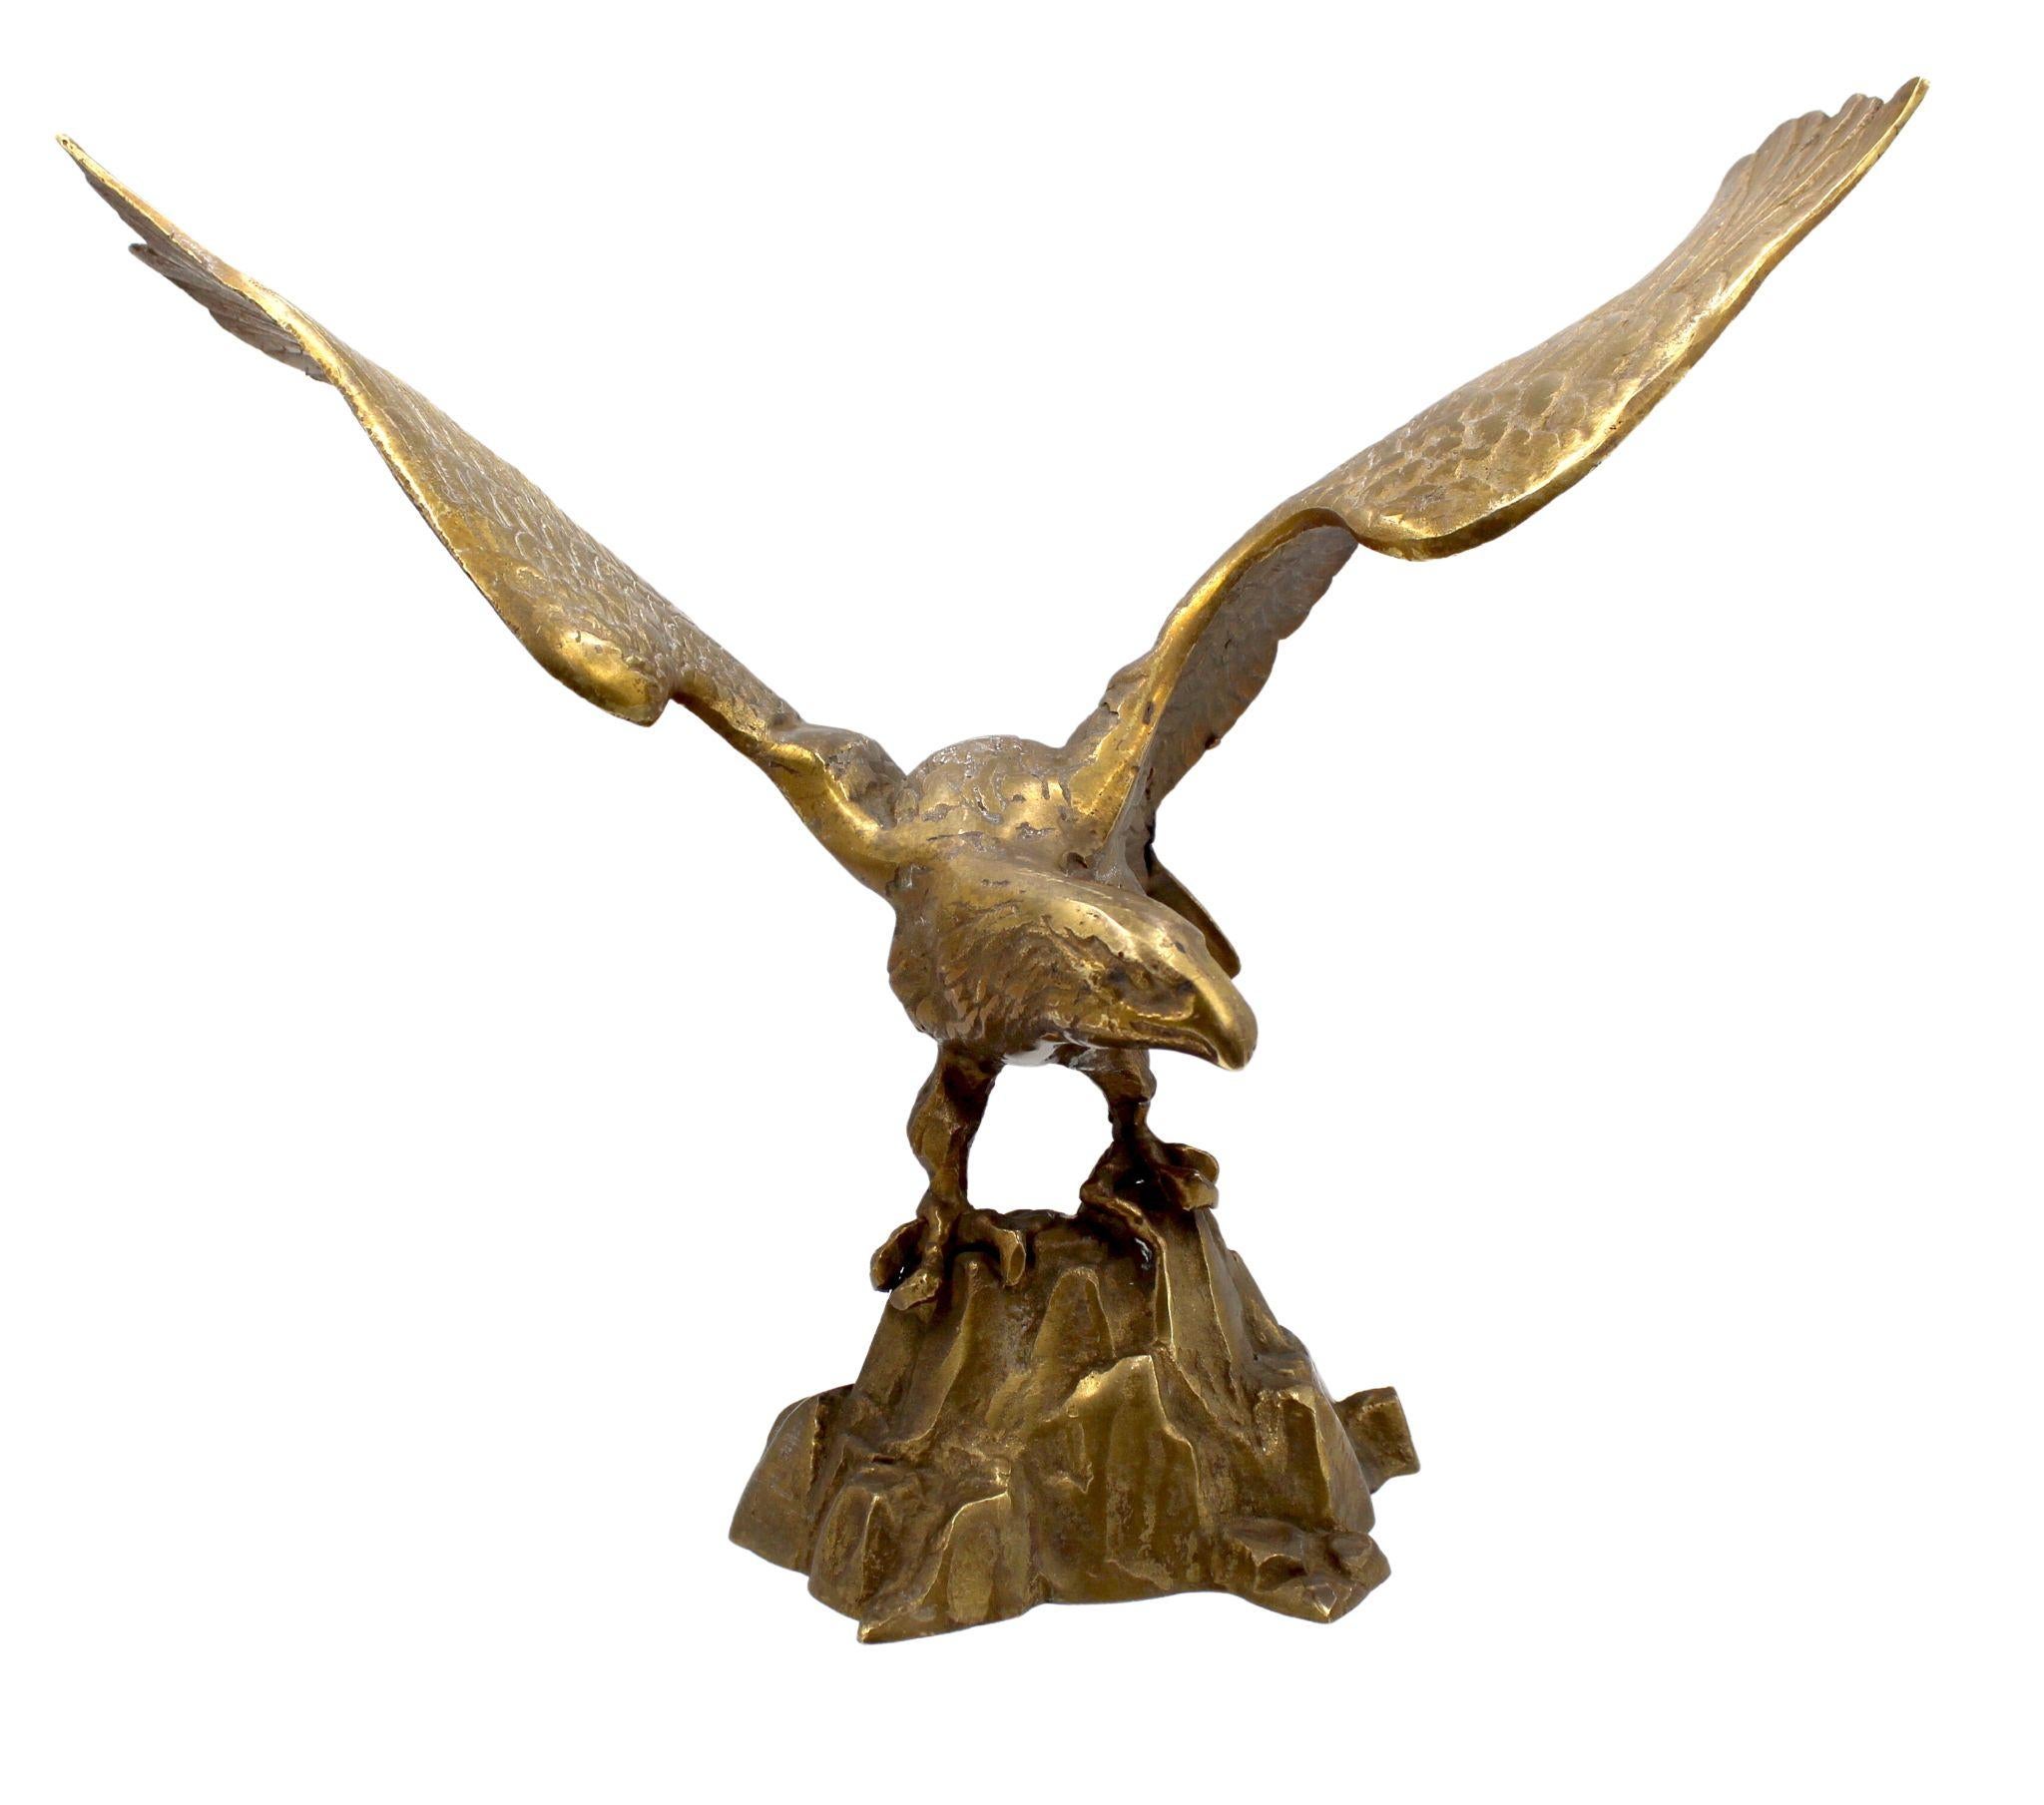 Präsentiert wird eine Vintage-Messing-Skulptur von einem Weißkopfseeadler auf Felsen. Diese in den frühen 1960er Jahren in Amerika hergestellte Skulptur zeigt einen großformatigen, realistisch gegossenen Weißkopfseeadler. Der Adler hat beide Flügel